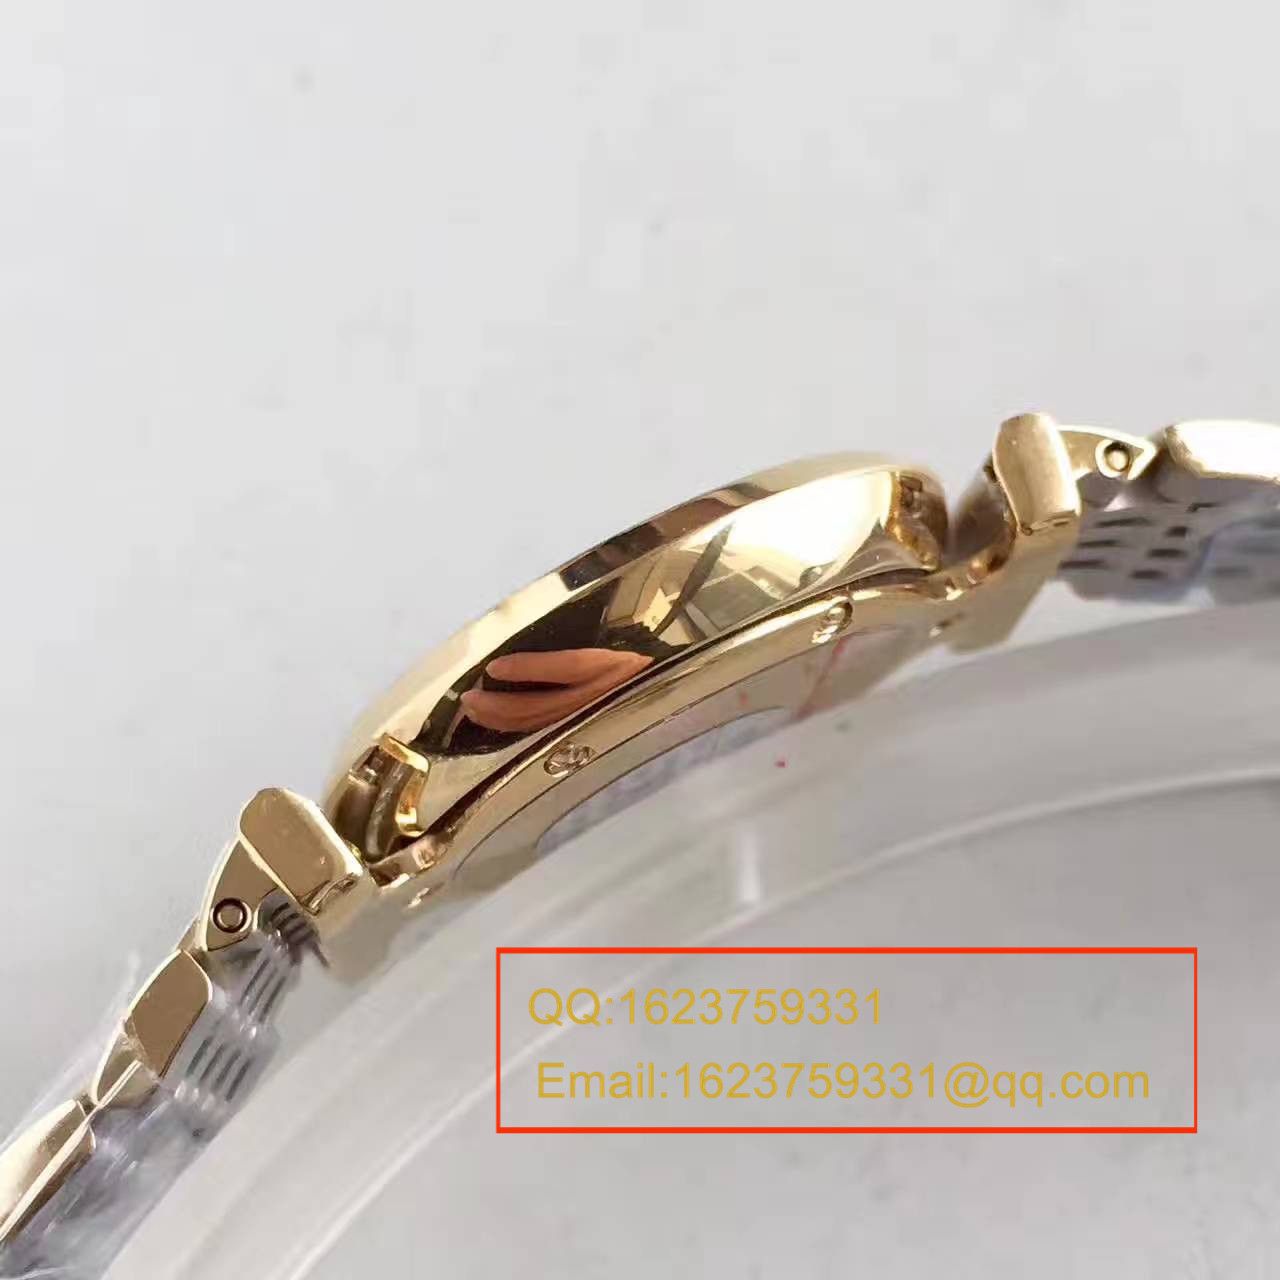 【MK厂一比一超A精仿手表】浪琴优雅系列L4.209.2.12.7女士腕表 